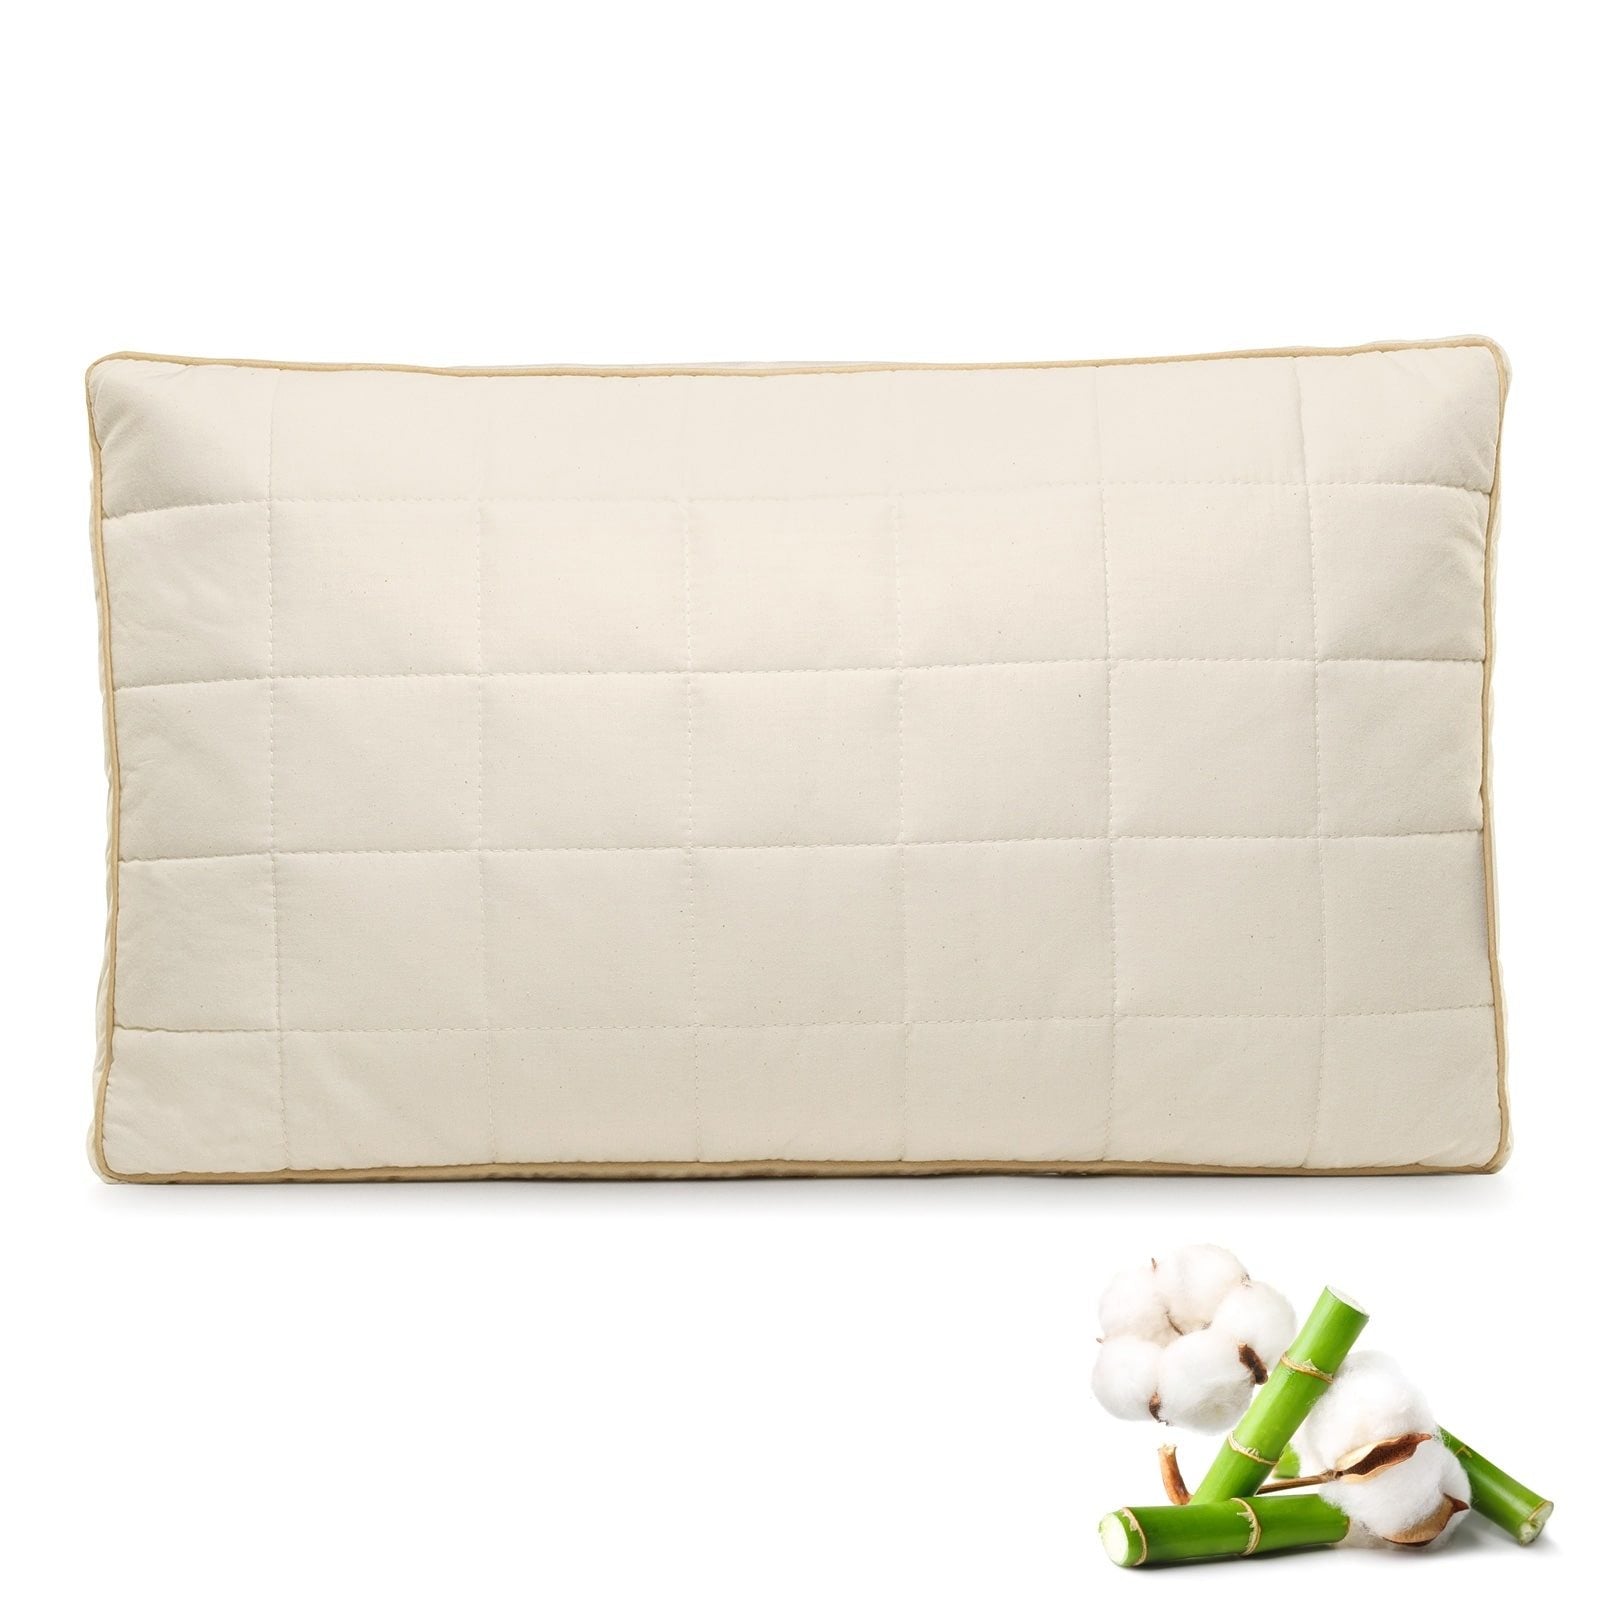 Kinder Kopfkissen My First Pillow, 40x60 cm